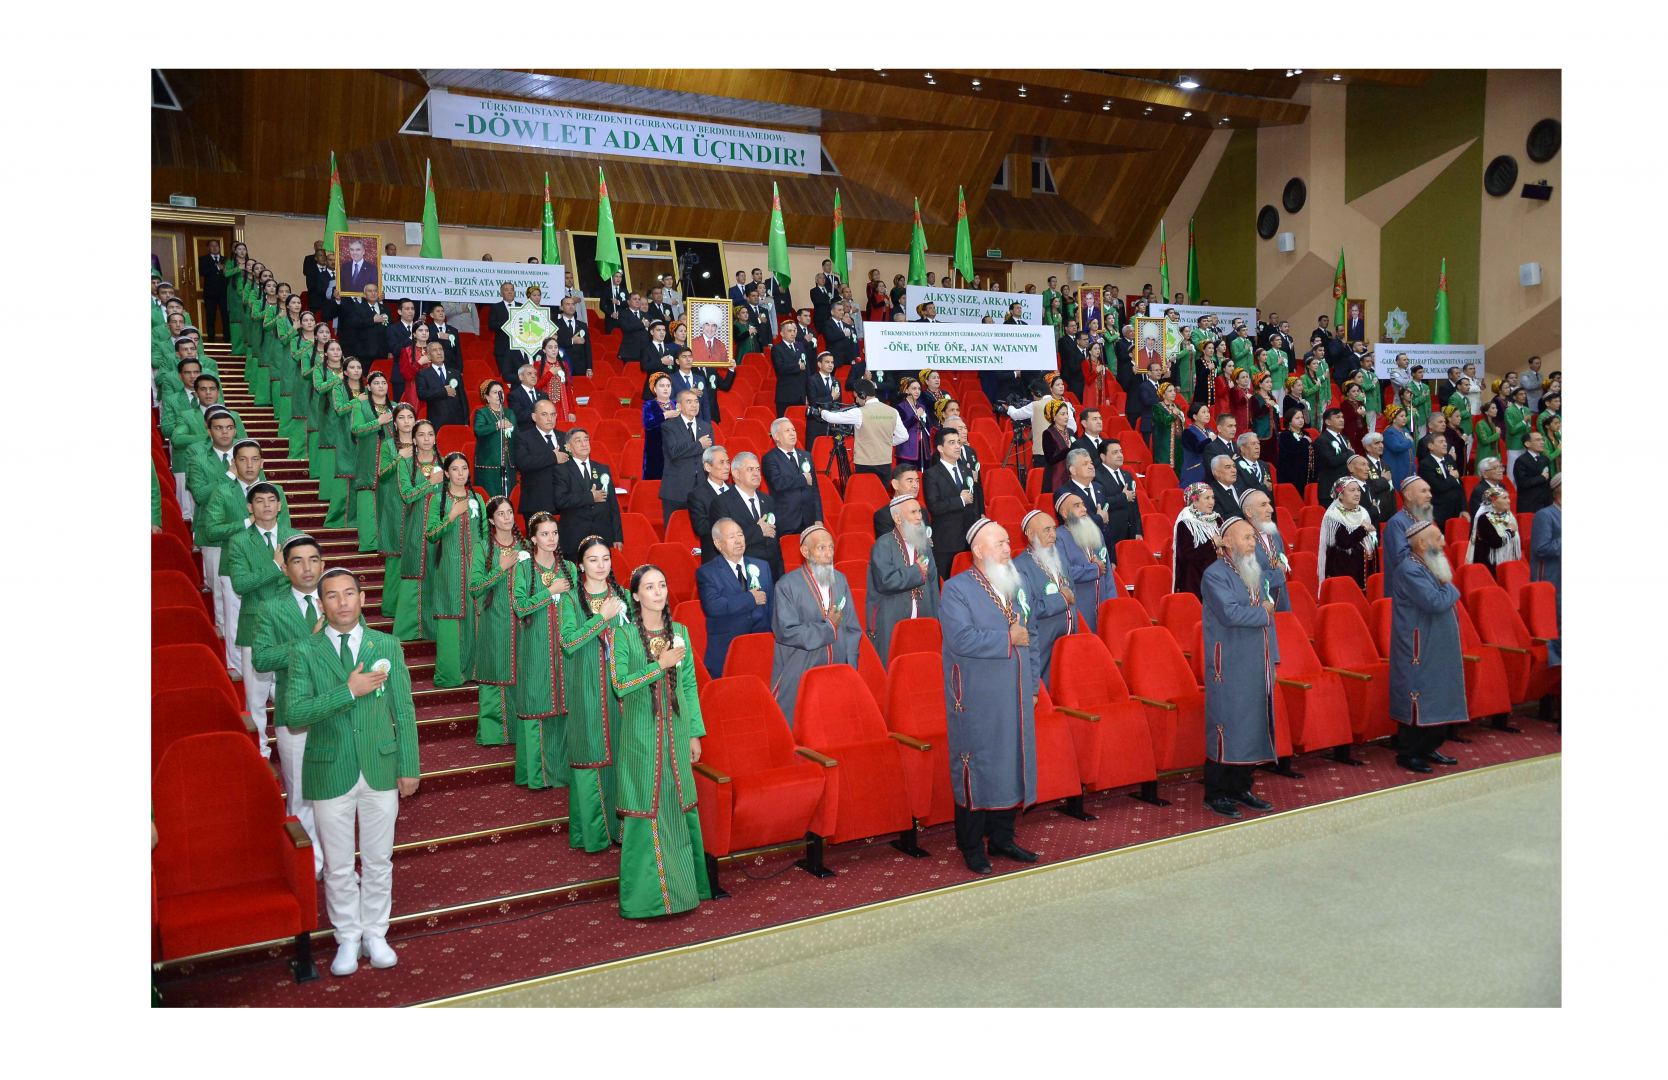 Президент Туркменистана отметил важность развития систем здравоохранения и образования для устойчивого развития страны